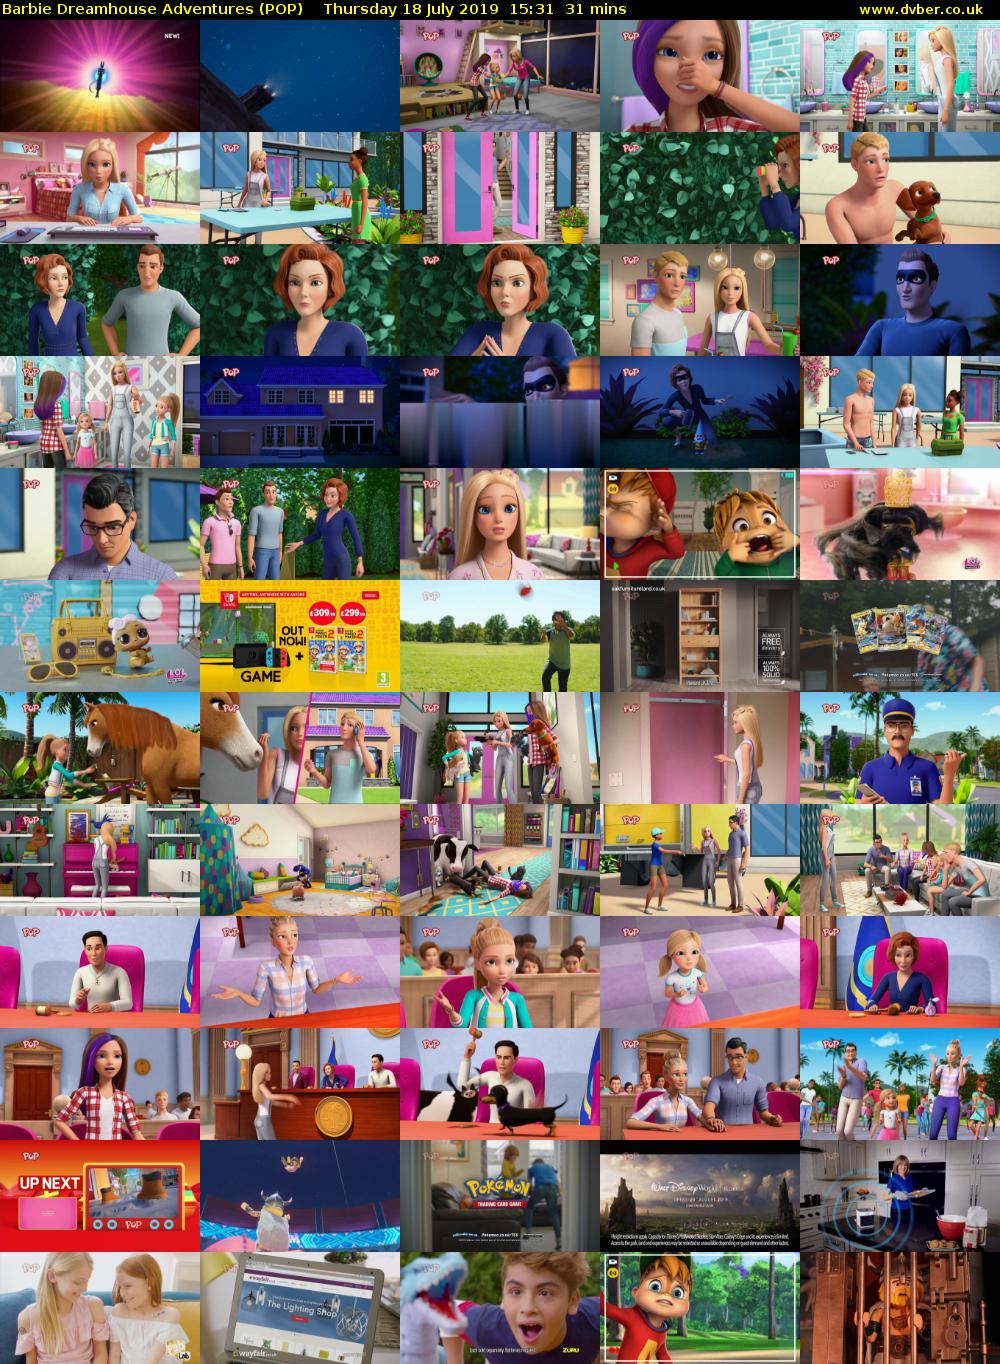 Barbie Dreamhouse Adventures (POP) Thursday 18 July 2019 15:31 - 16:02